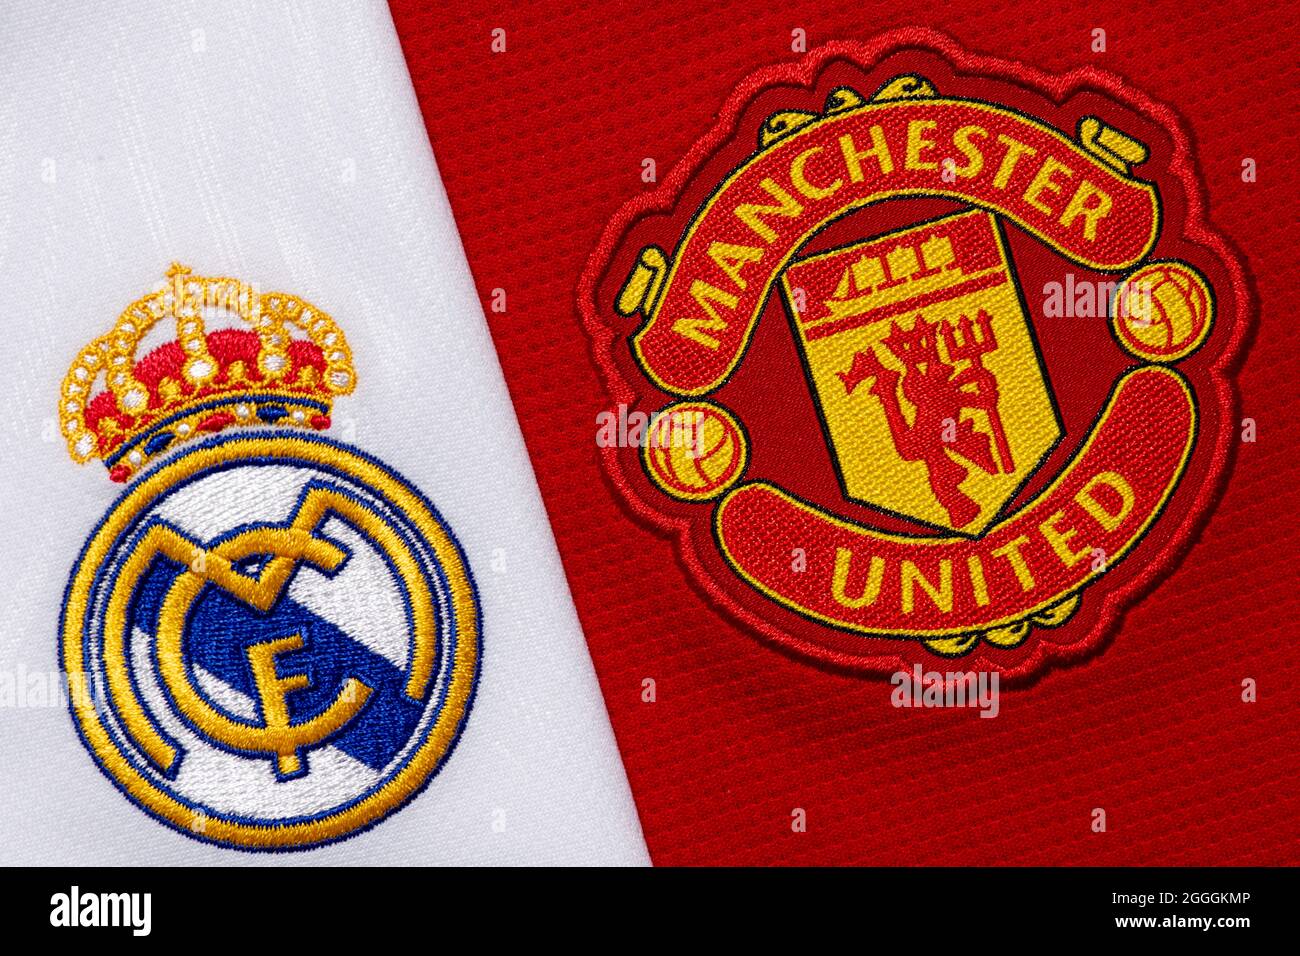 Primo piano dello stemma del club Manchester United & Real Madrid. Foto Stock